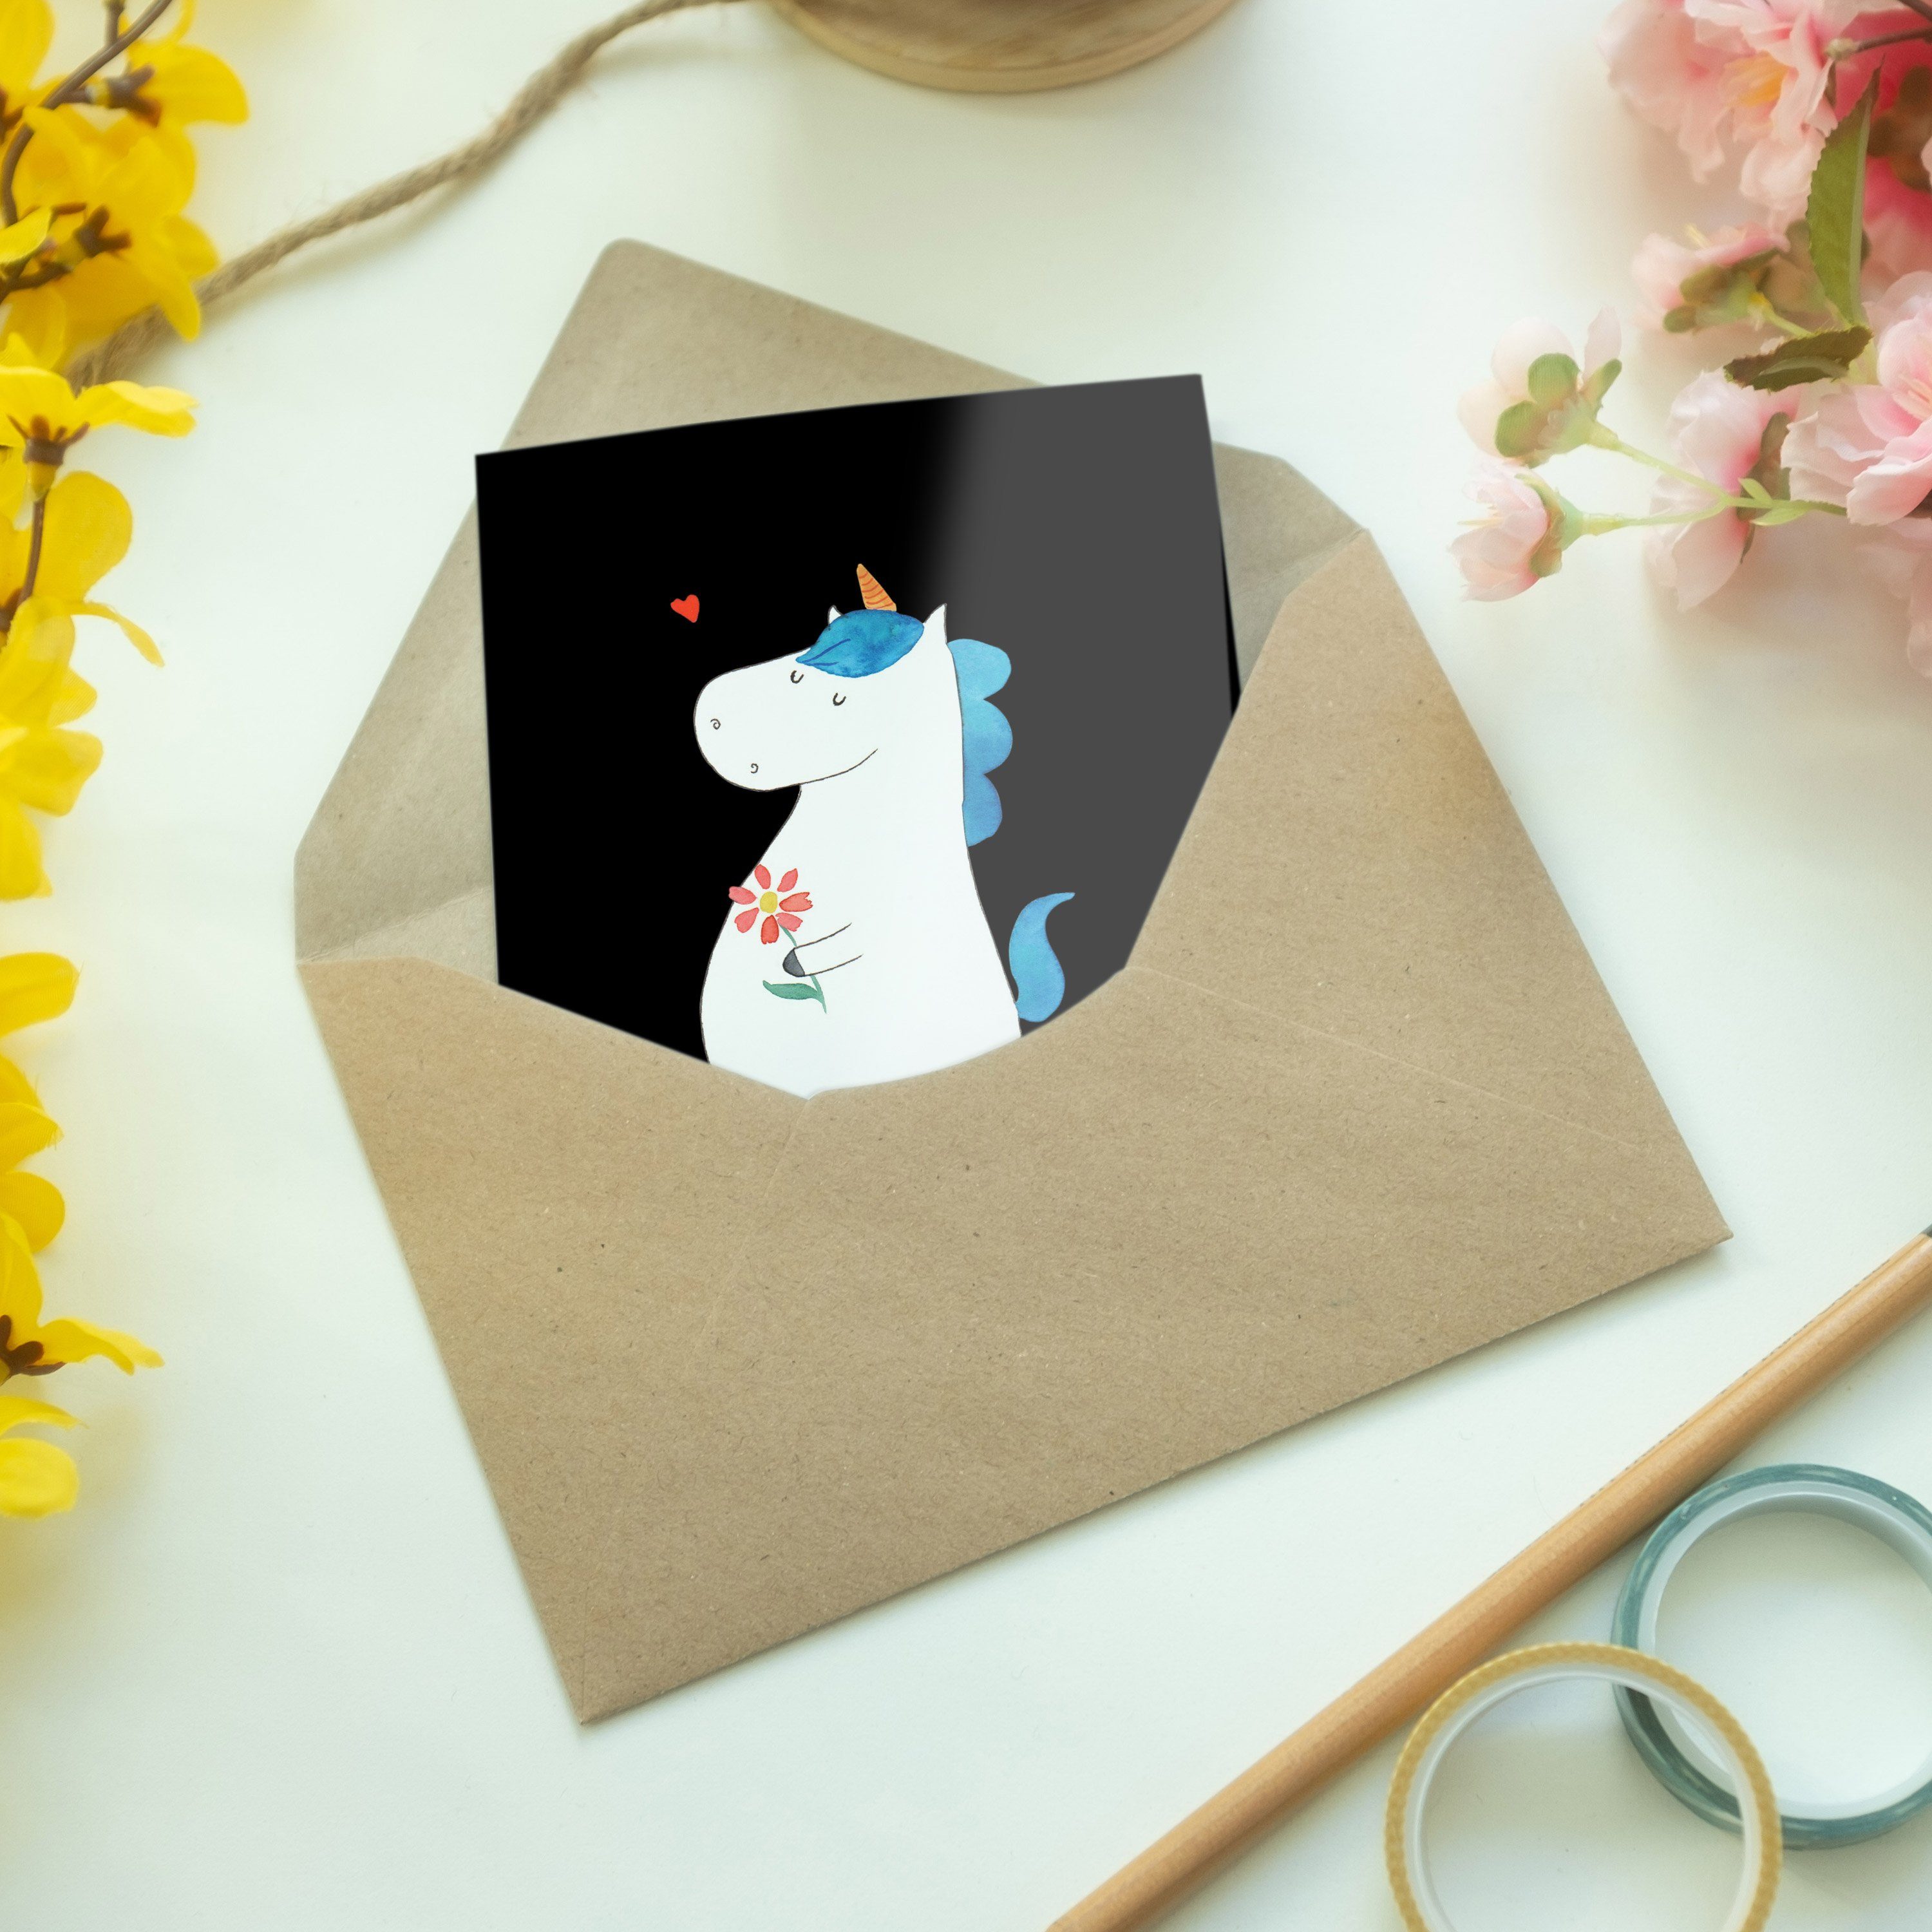 Mr. & Einhörner Spaziergang - Mrs. Panda Einhorn Geburtstagskarte, Schwarz Geschenk, Grußkarte 